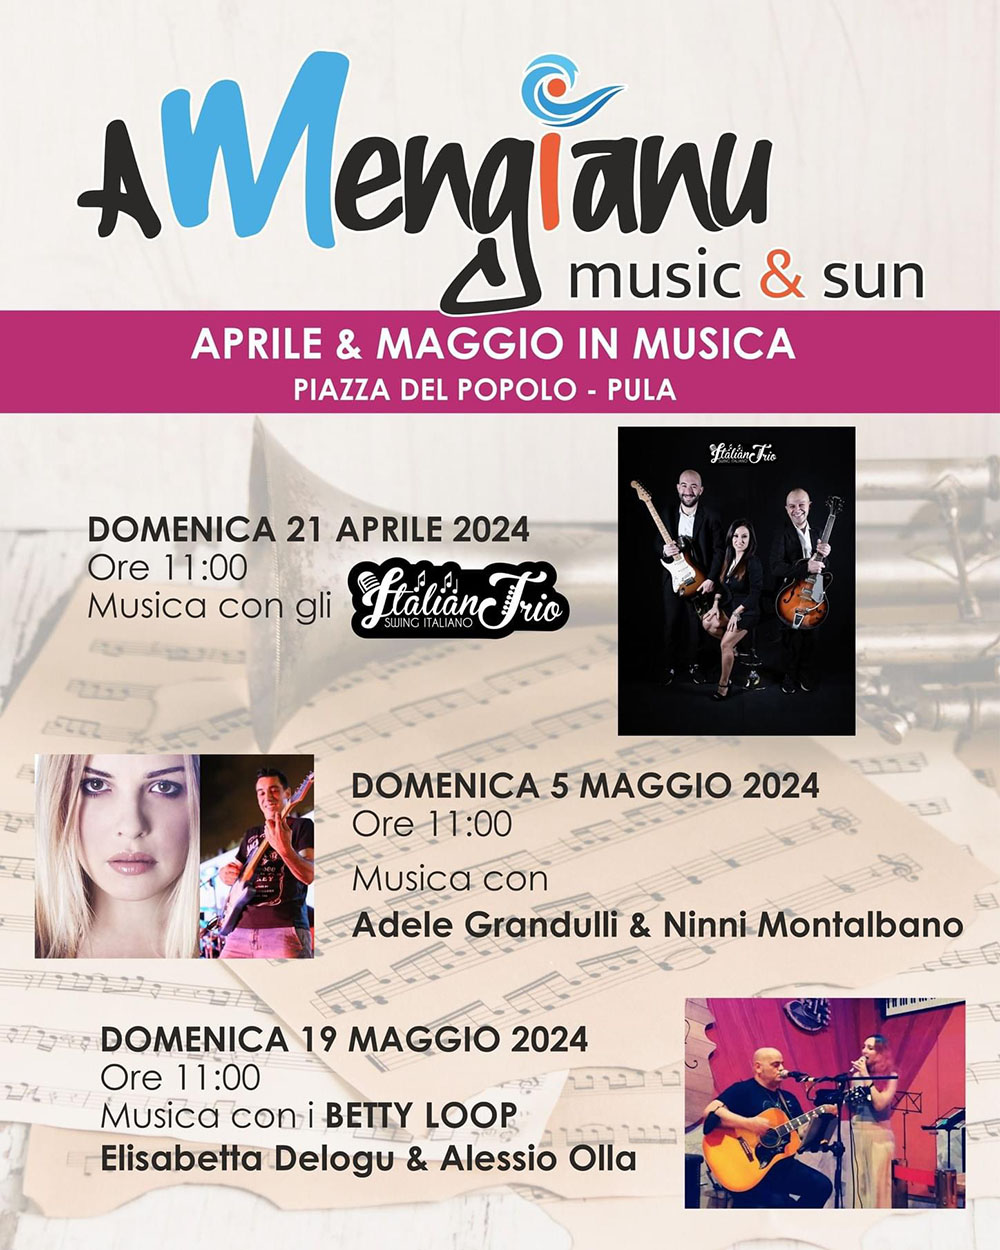 "Aprile&Maggio in musica" Pula